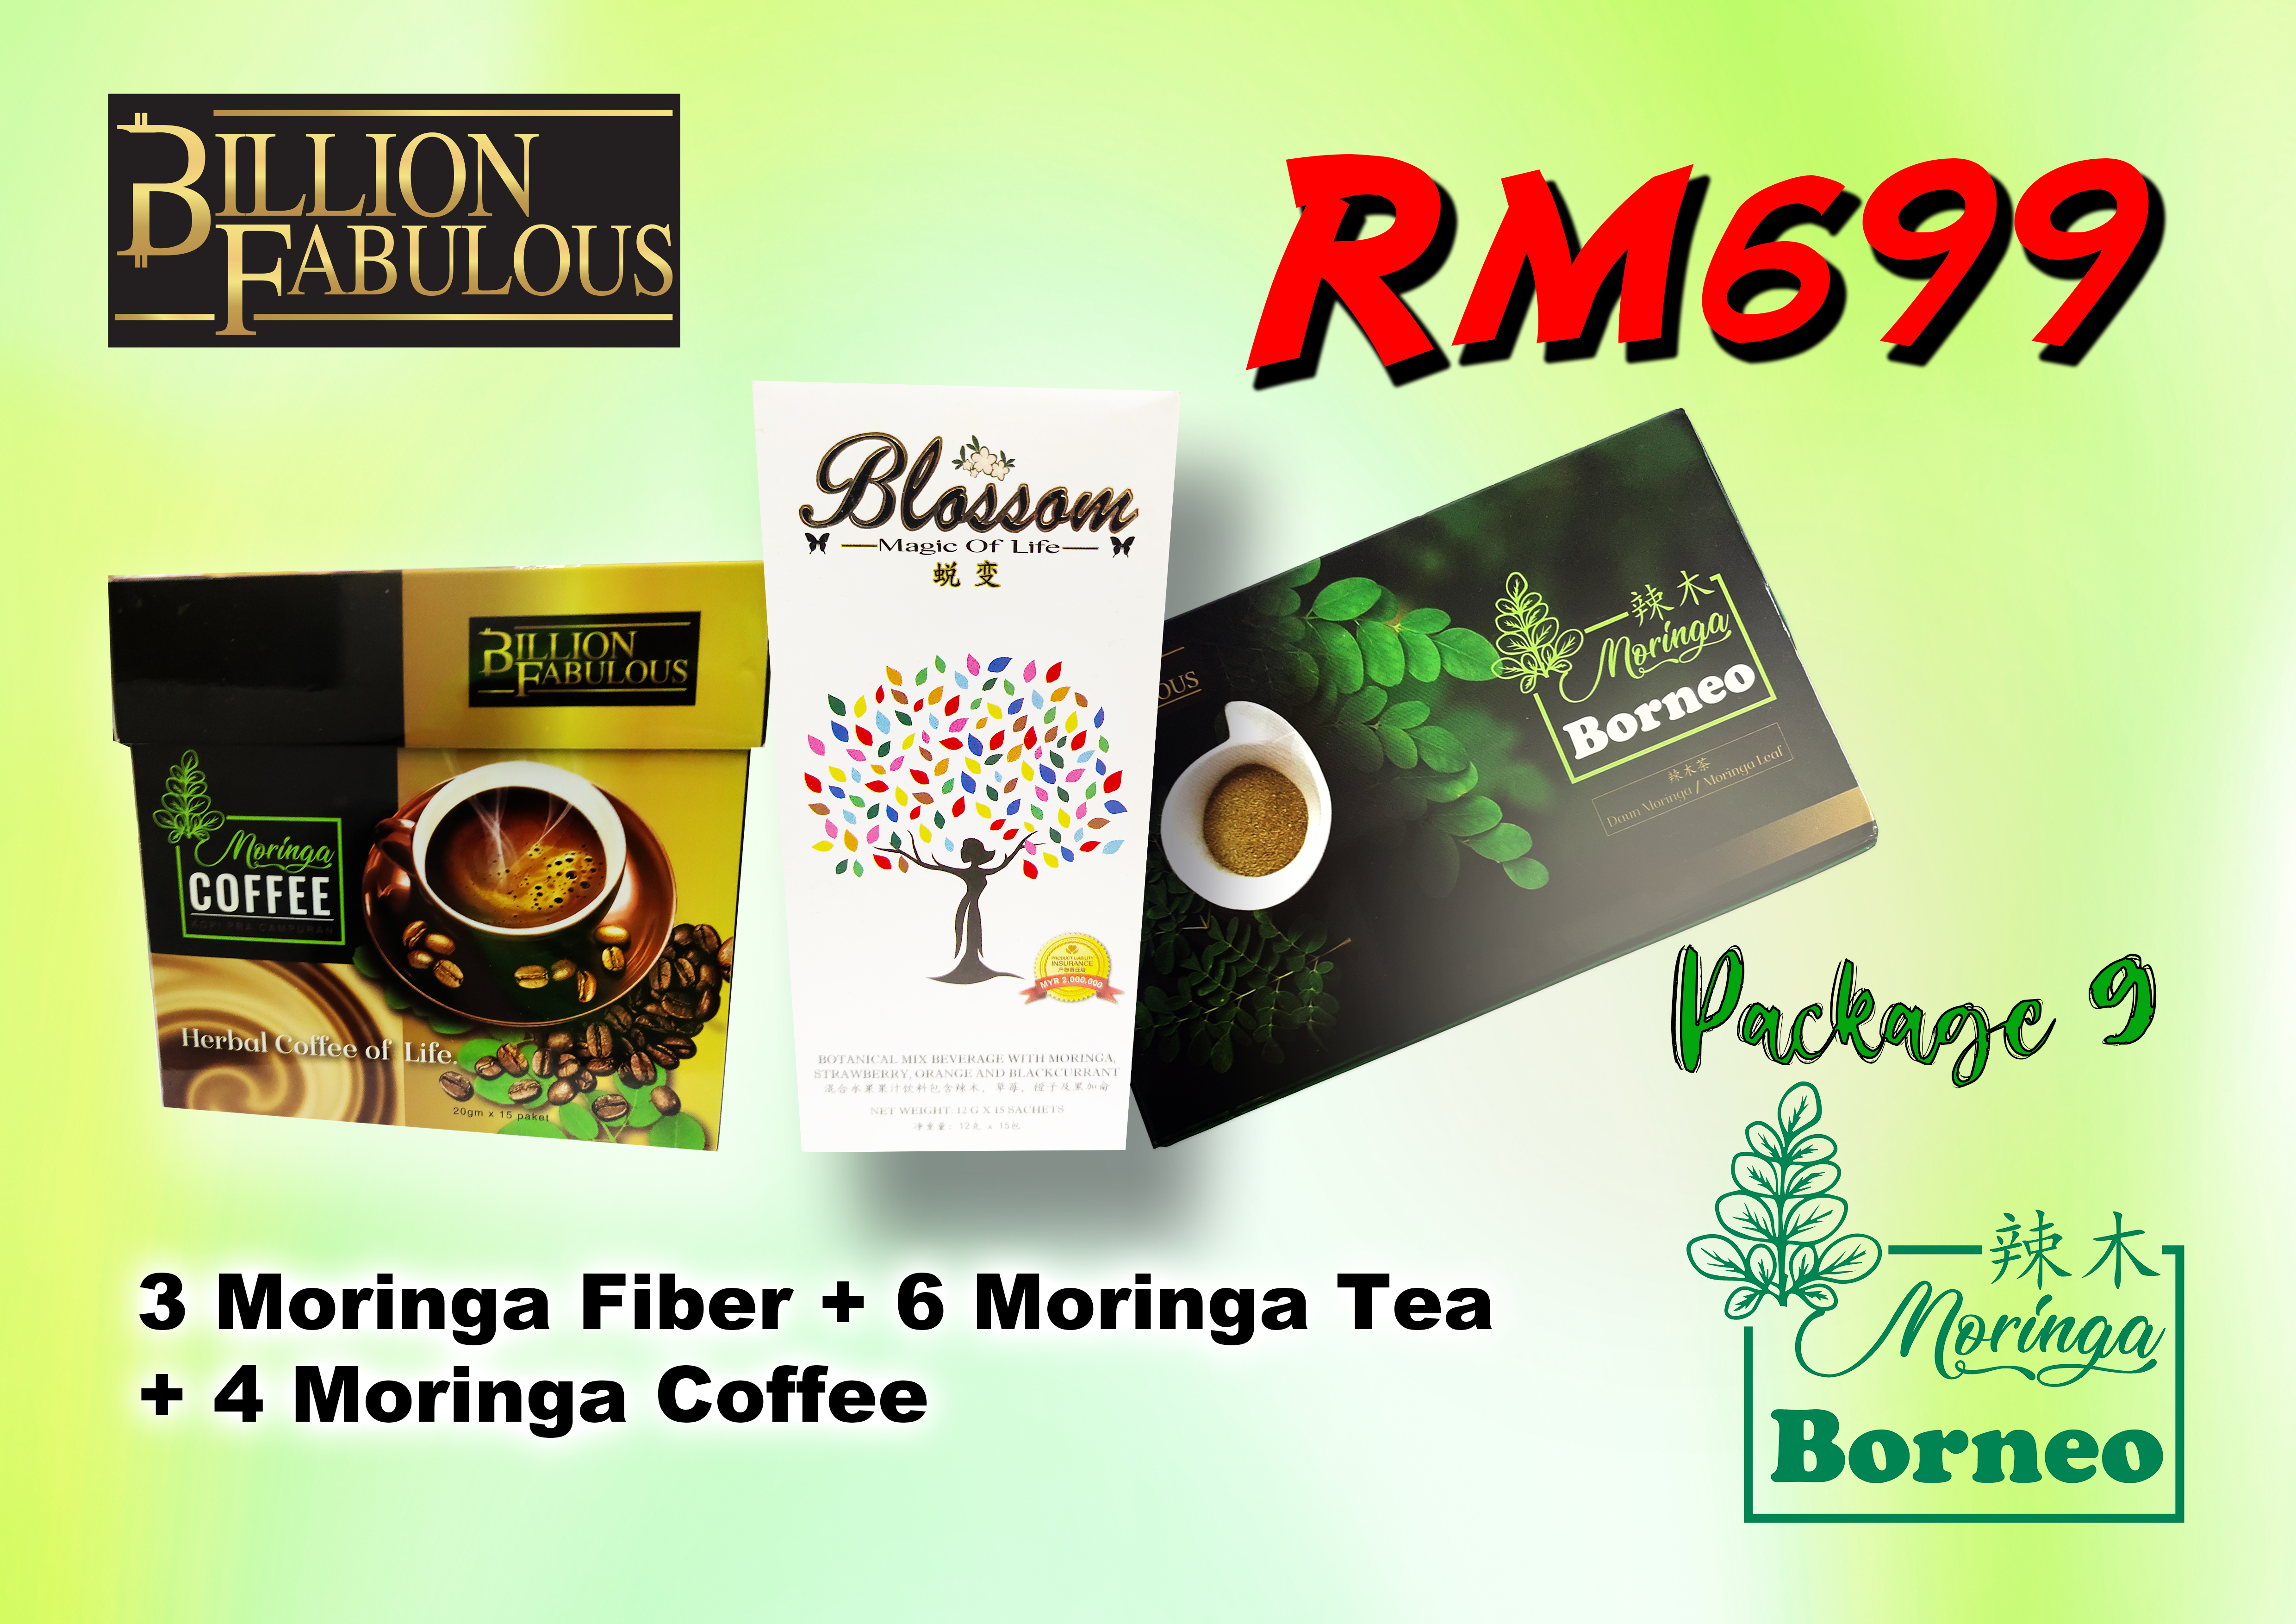 Moringa Fiber + Tea + Coffee